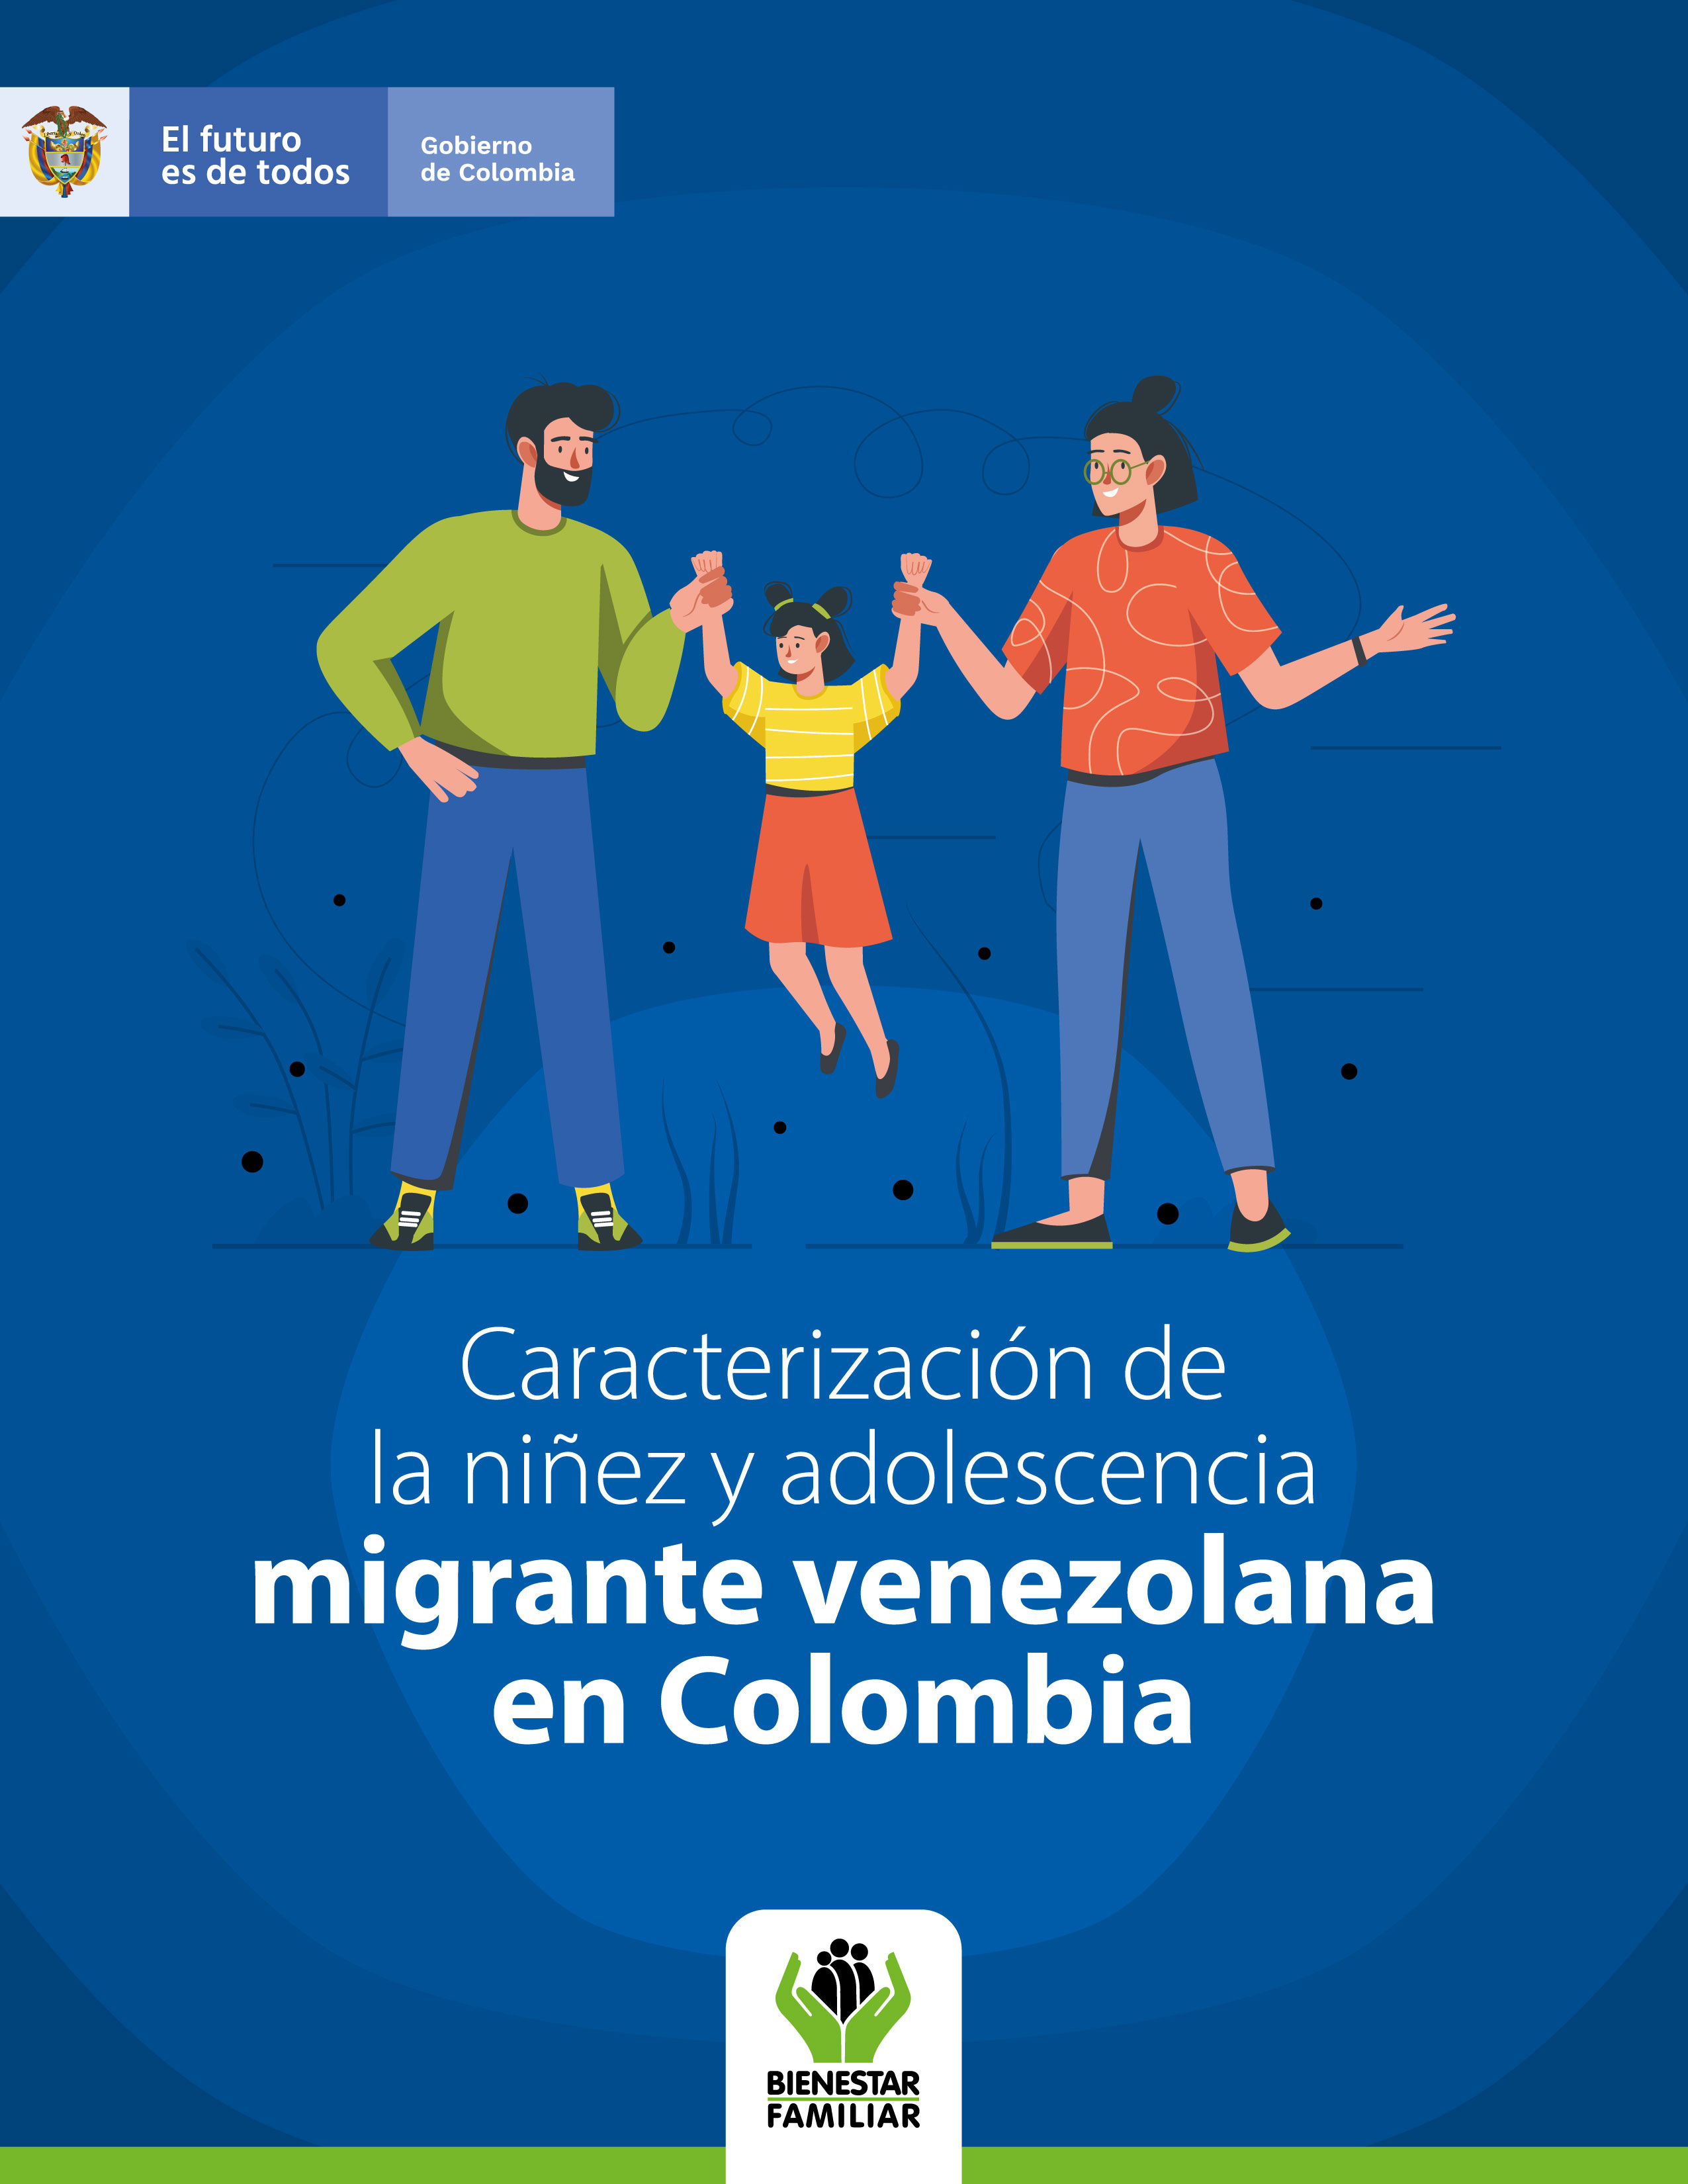 La migración de población venezolana es la más significativa en la historia de América Latina